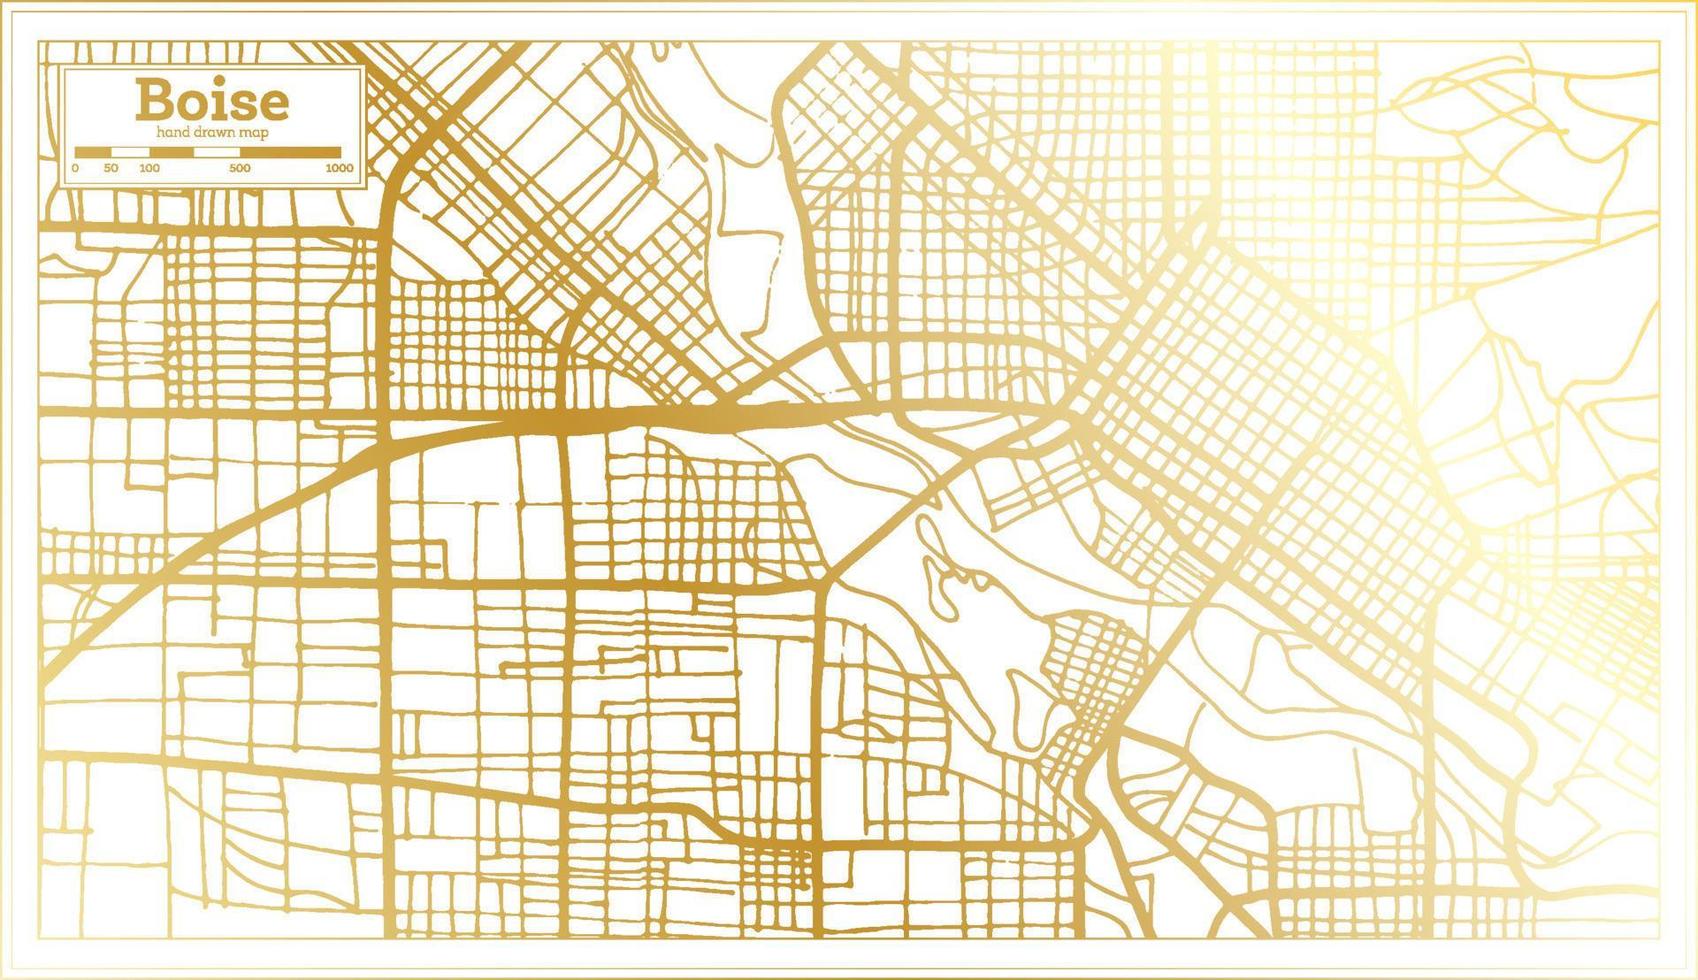 boise Verenigde Staten van Amerika stad kaart in retro stijl in gouden kleur. schets kaart. vector